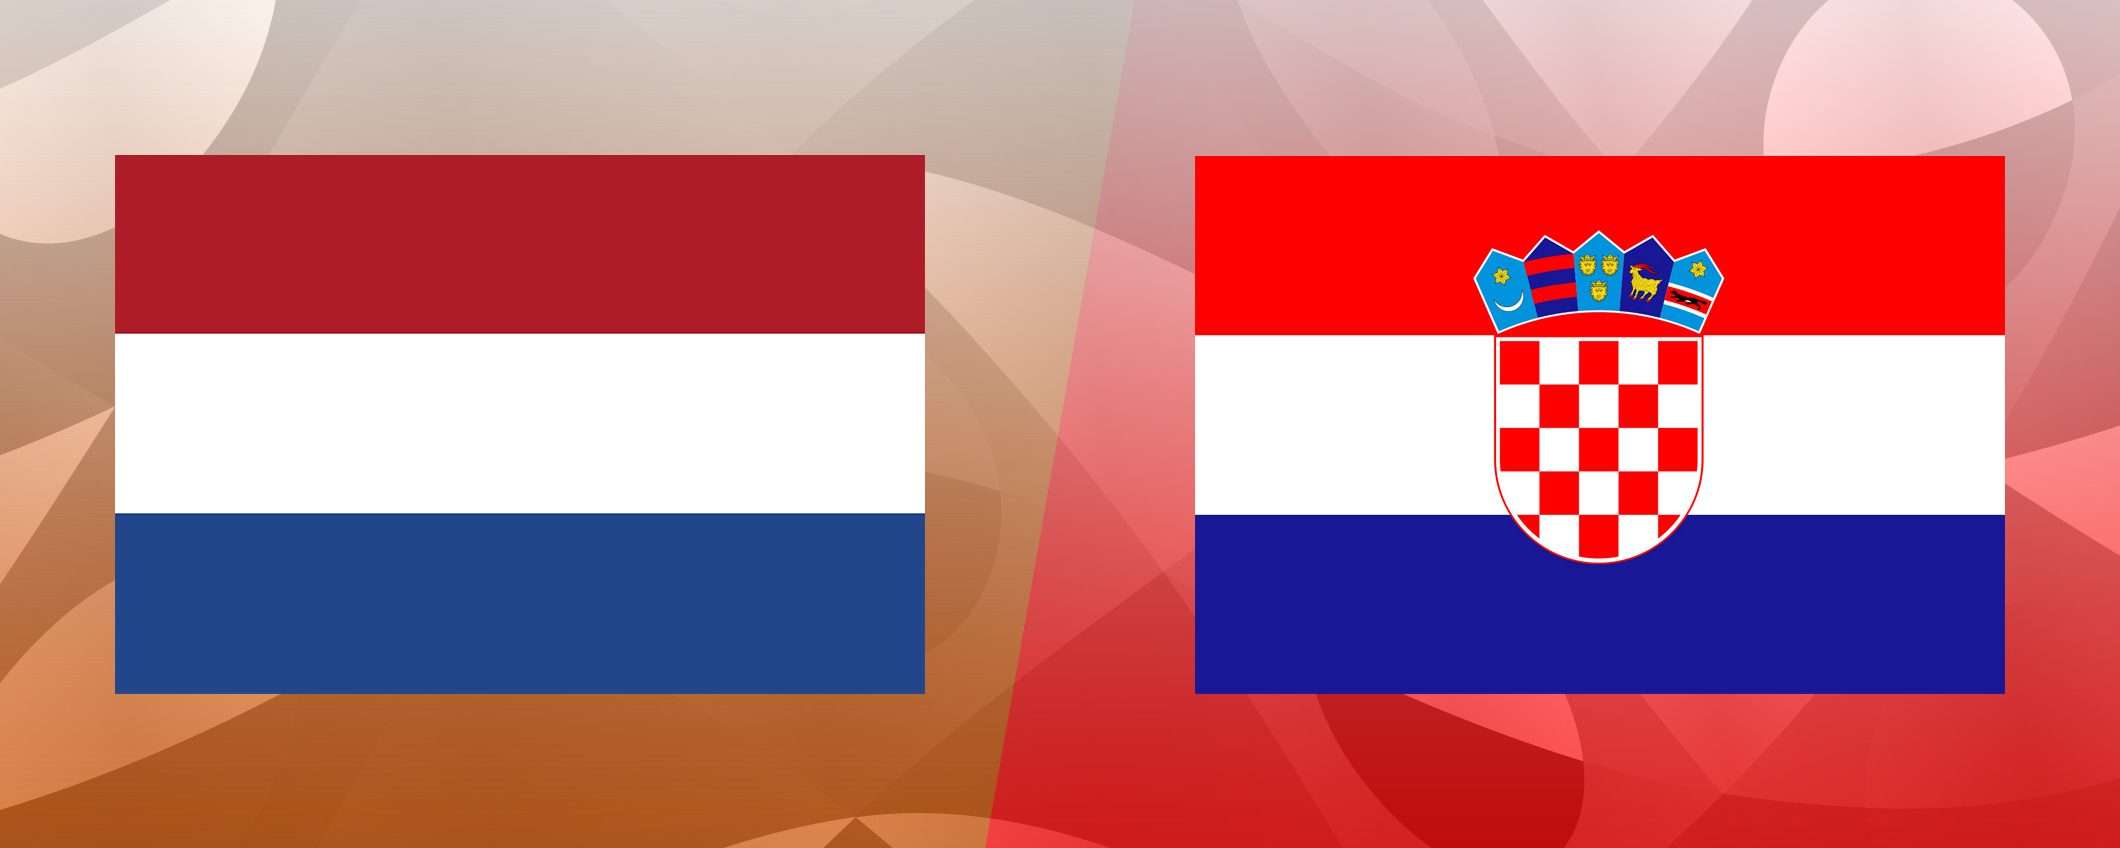 Come vedere Olanda-Croazia in streaming gratis